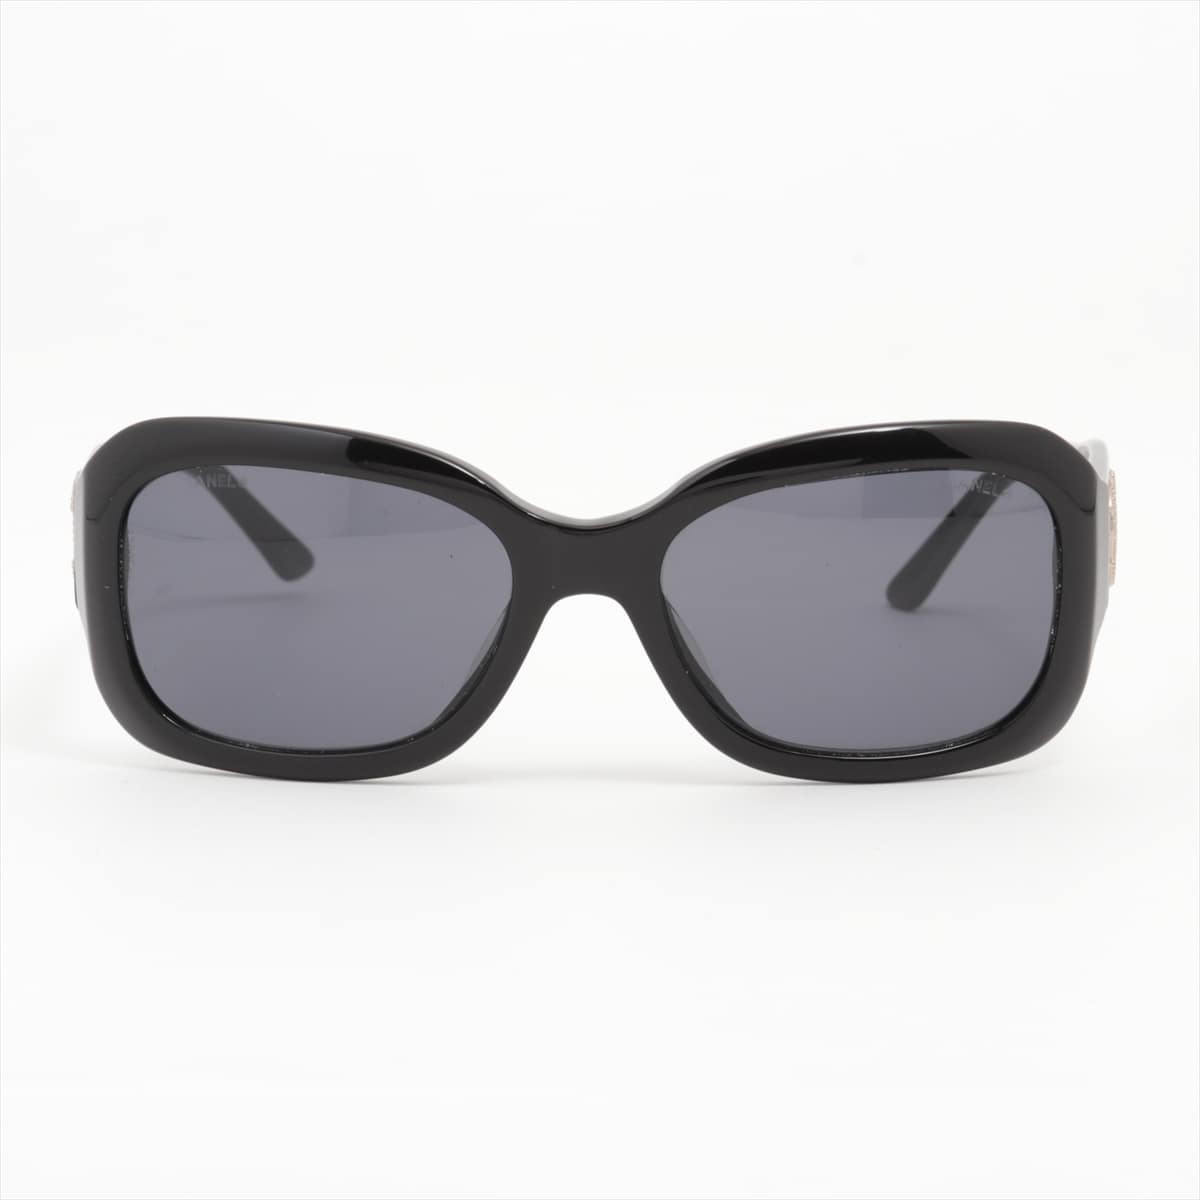 Chanel 5102 Coco Mark Sunglasses Plastic Black